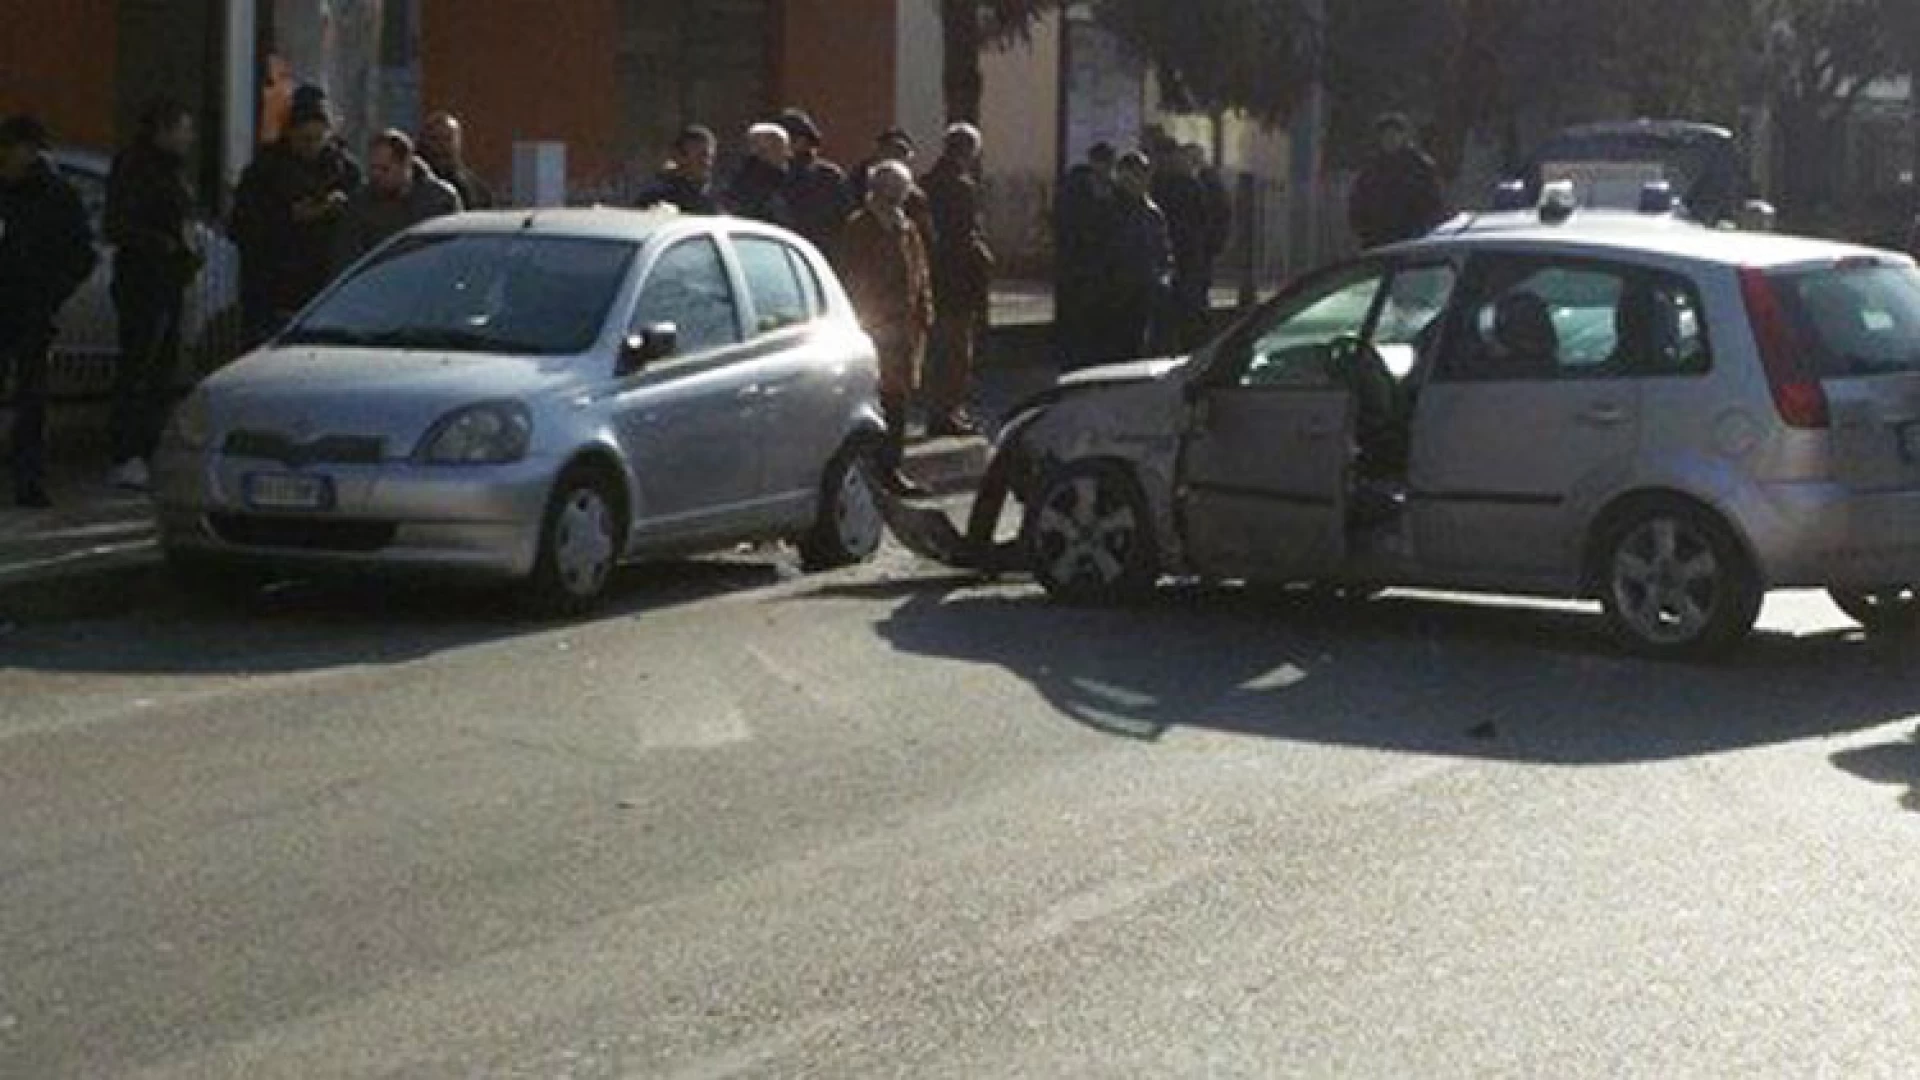 Venafro: incredibile carambola di auto questa mattina su Via Campania. Coinvolte quattro vetture. Un ferito trasportato ad Isernia.